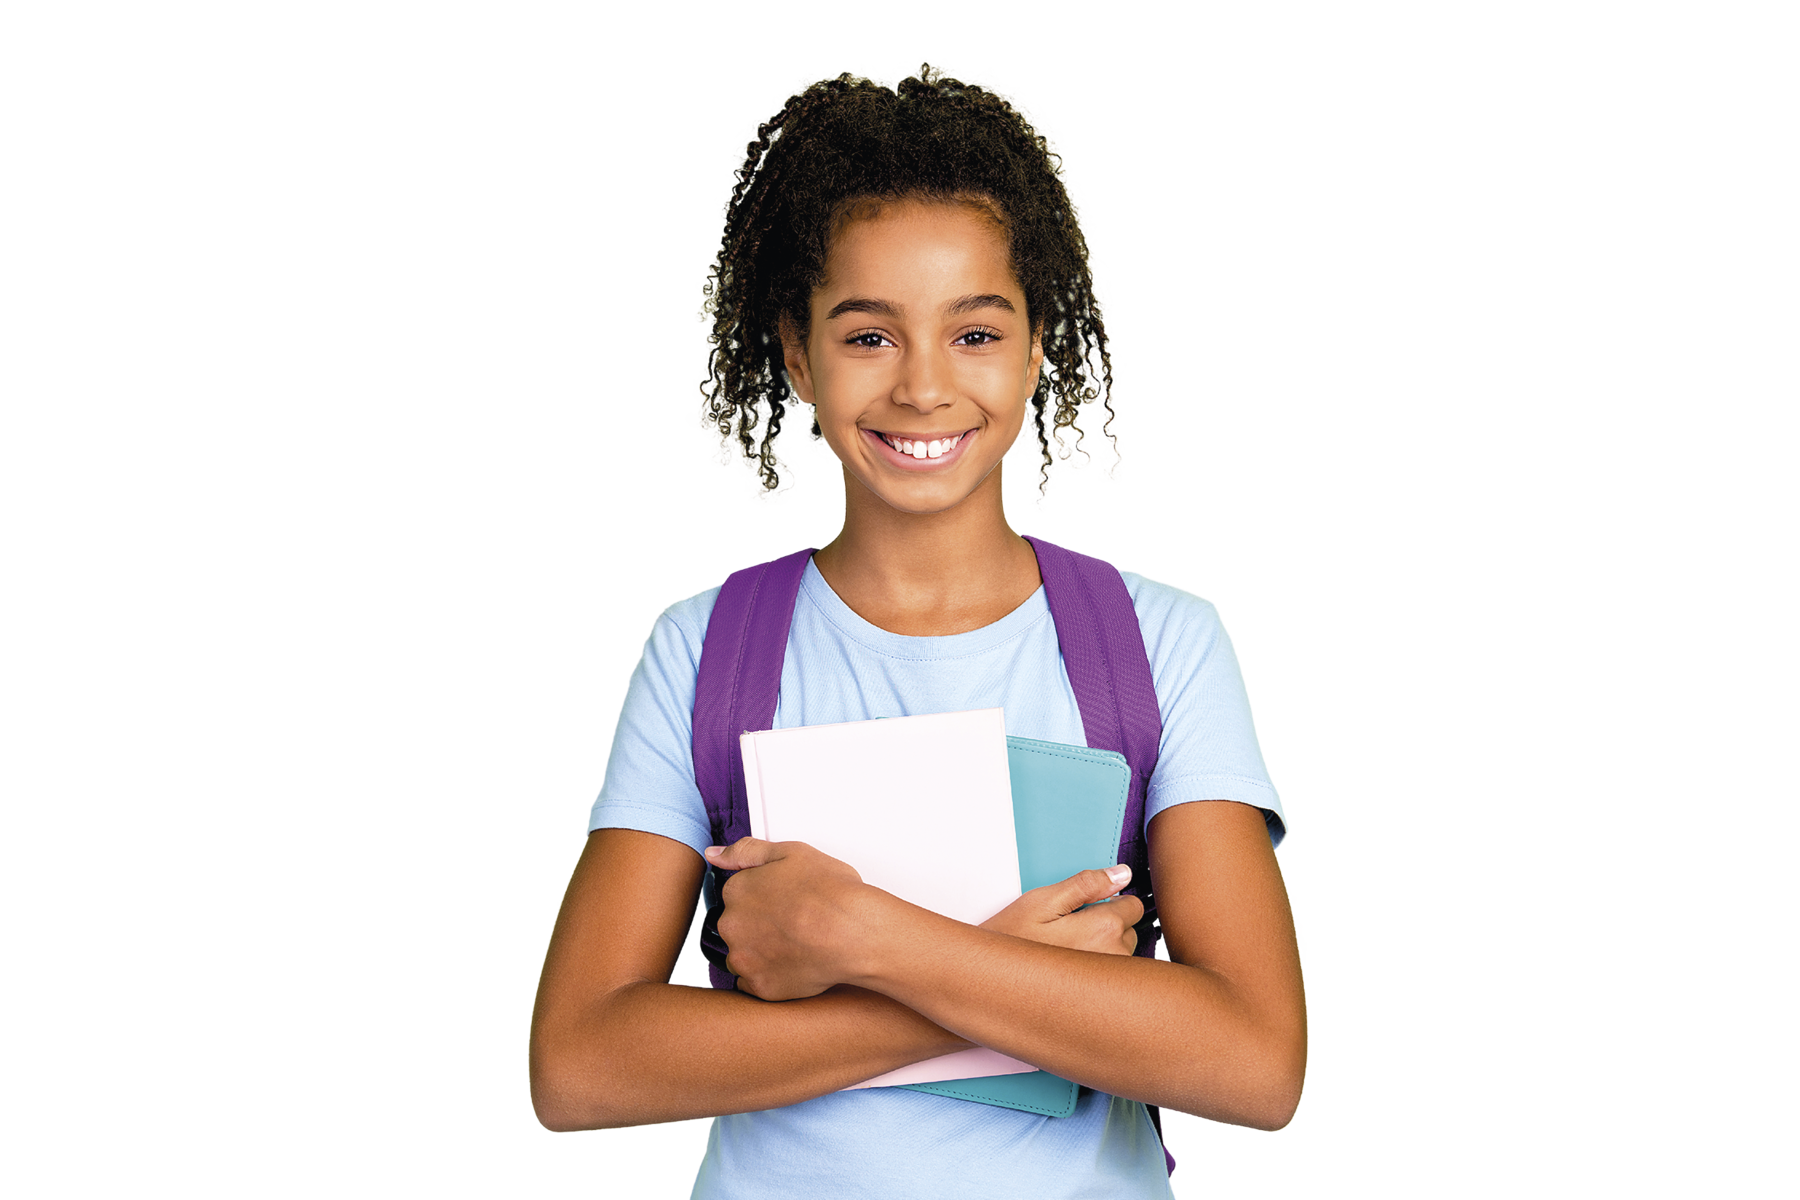 Fotografia. Estudante negra, sorrindo. Ela veste uniforme azul, mochila nas costas e cadernos nas mãos.